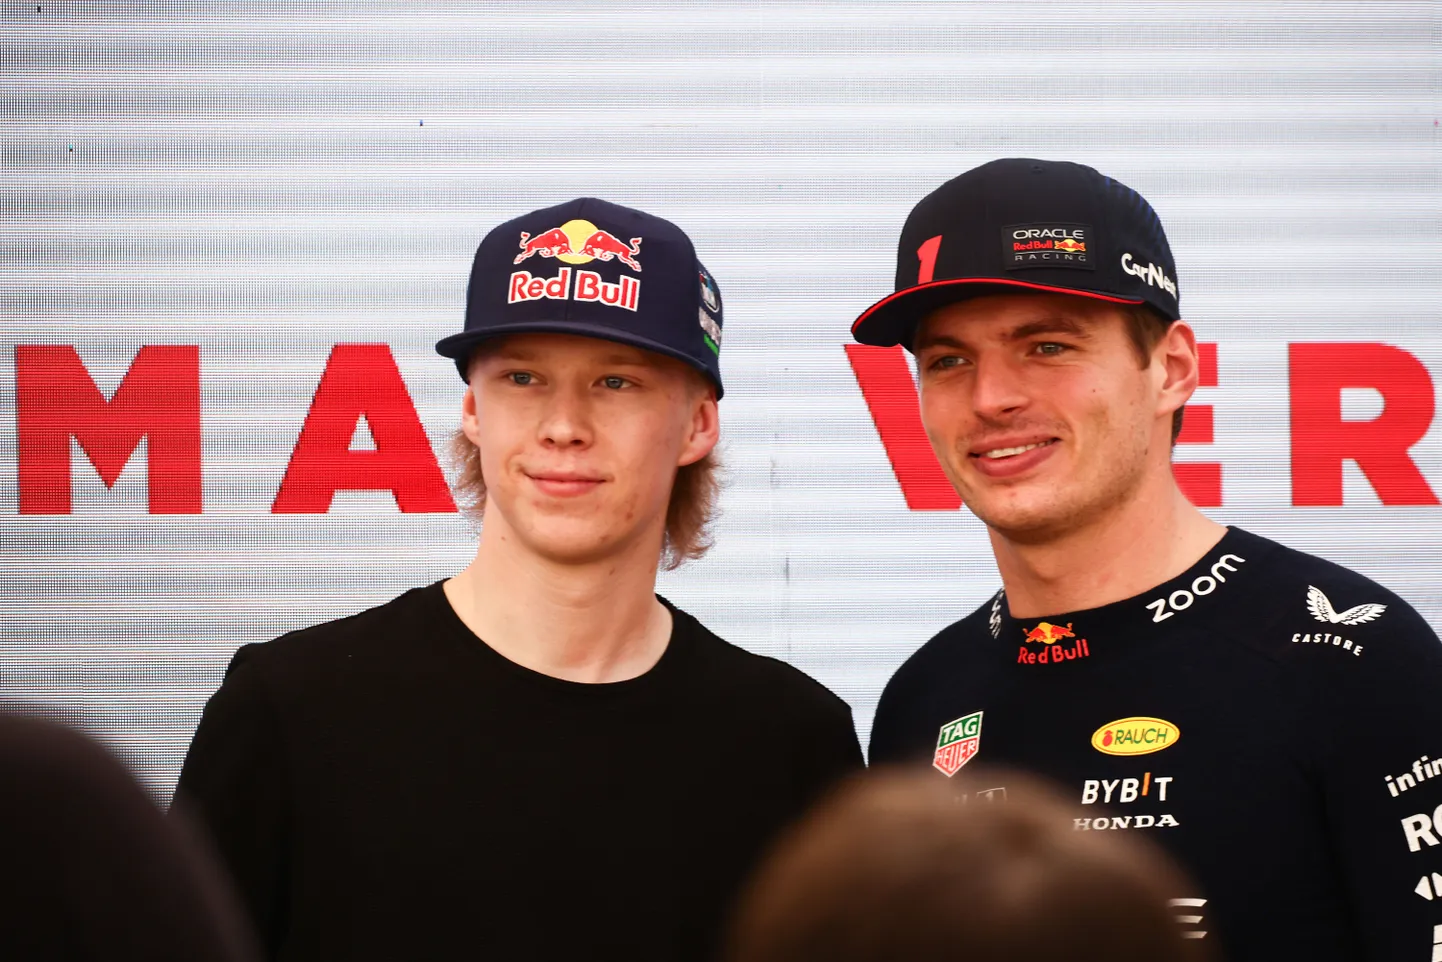 Kalle Rovanperä (vasakul) veel F1-autosse ei istu ja Max Verstappeni (paremal) konkurendiks ei saa, kuid ta on vihjanud, et sooviks ühel päeval seda kuningliku klassi autot vähemalt testida.